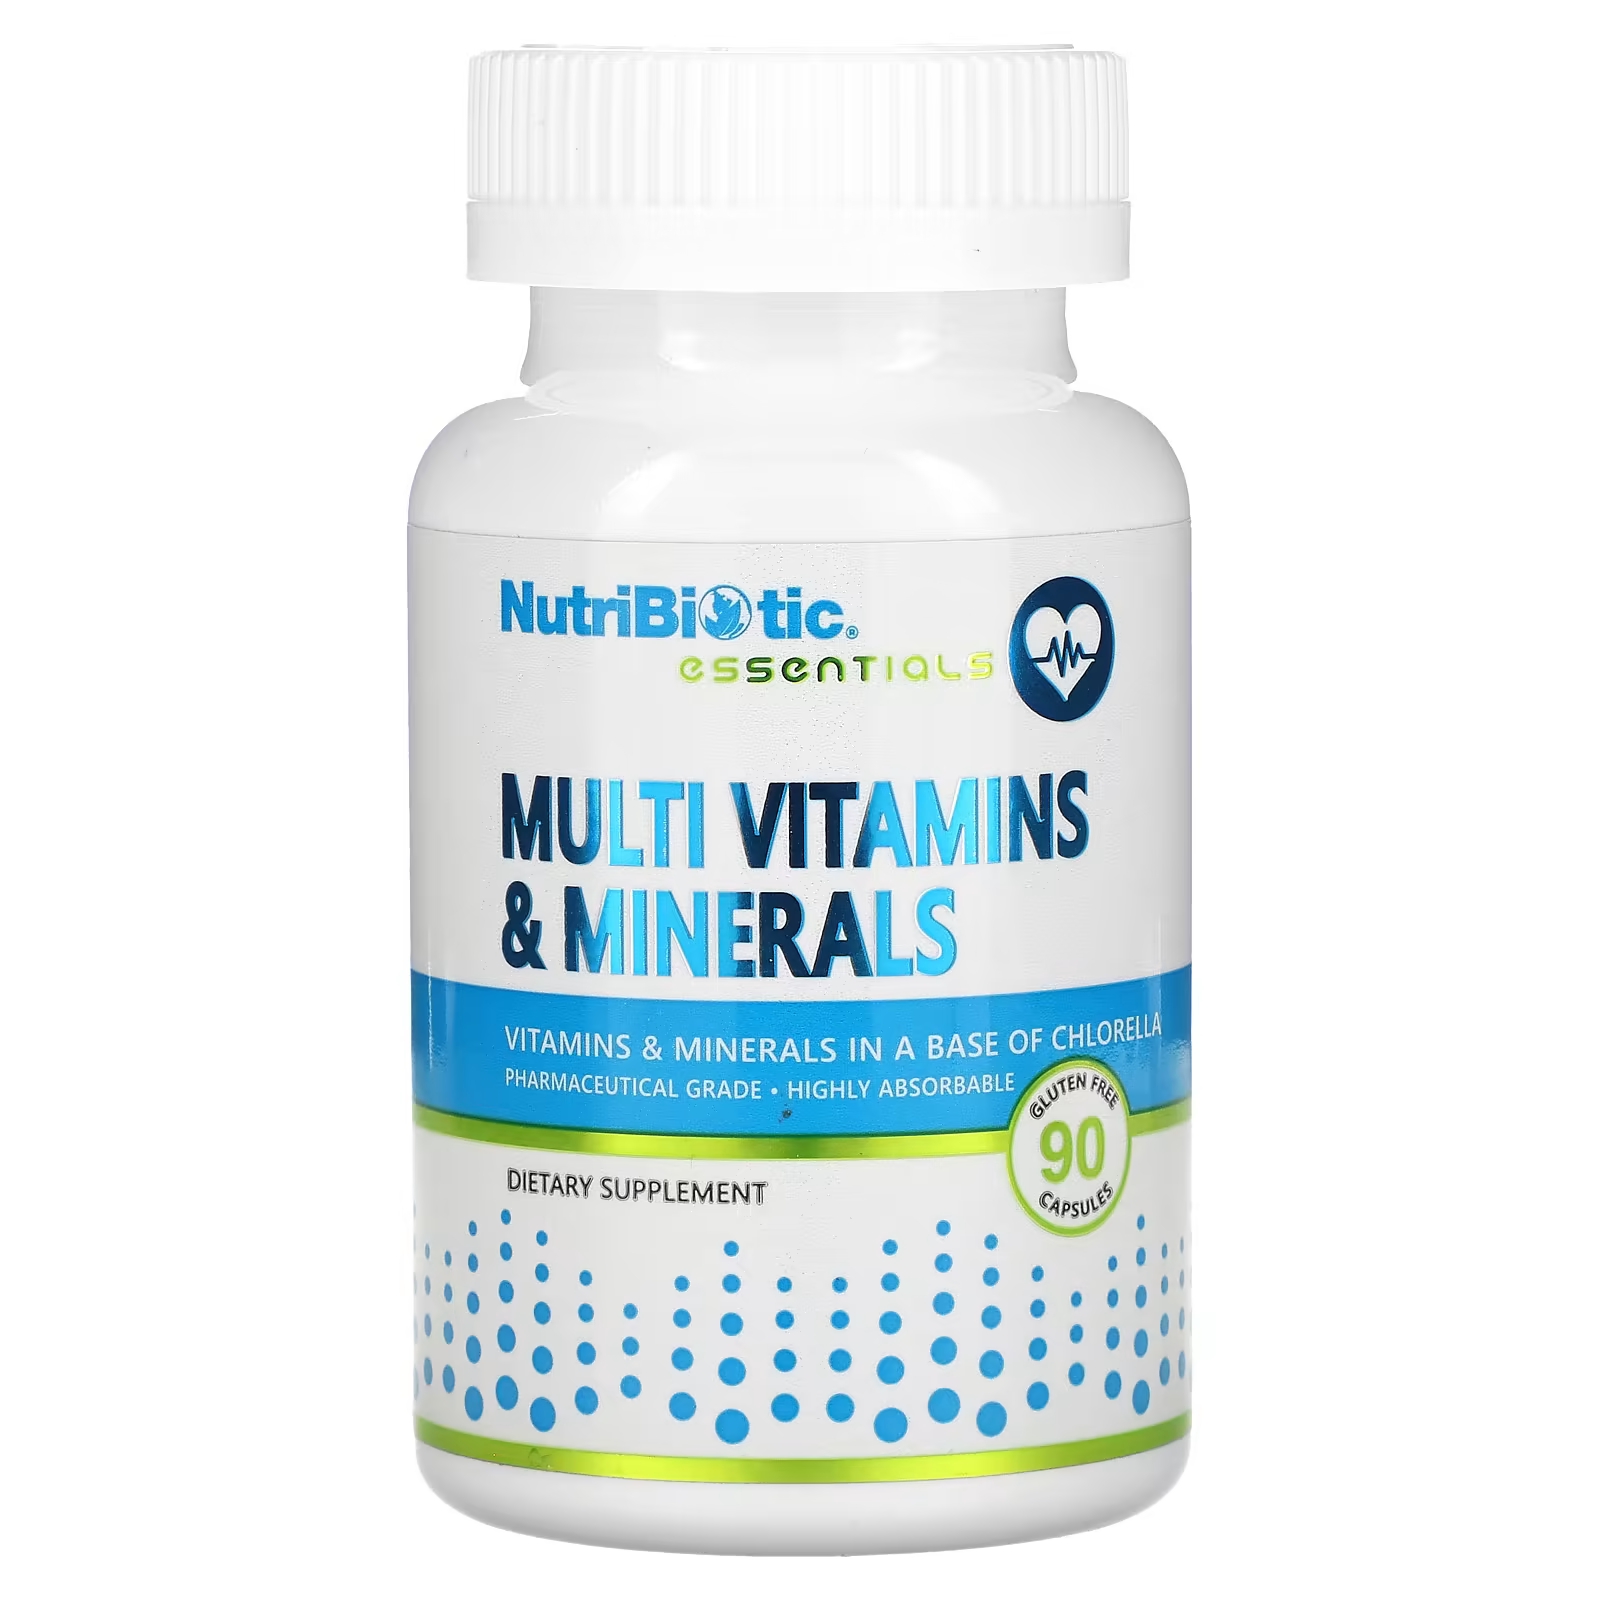 Пищевая добавка NutriBiotic мультивитамины и минералы, 90 капсул пищевая добавка nutribiotic immunity cherry electro c 454 г